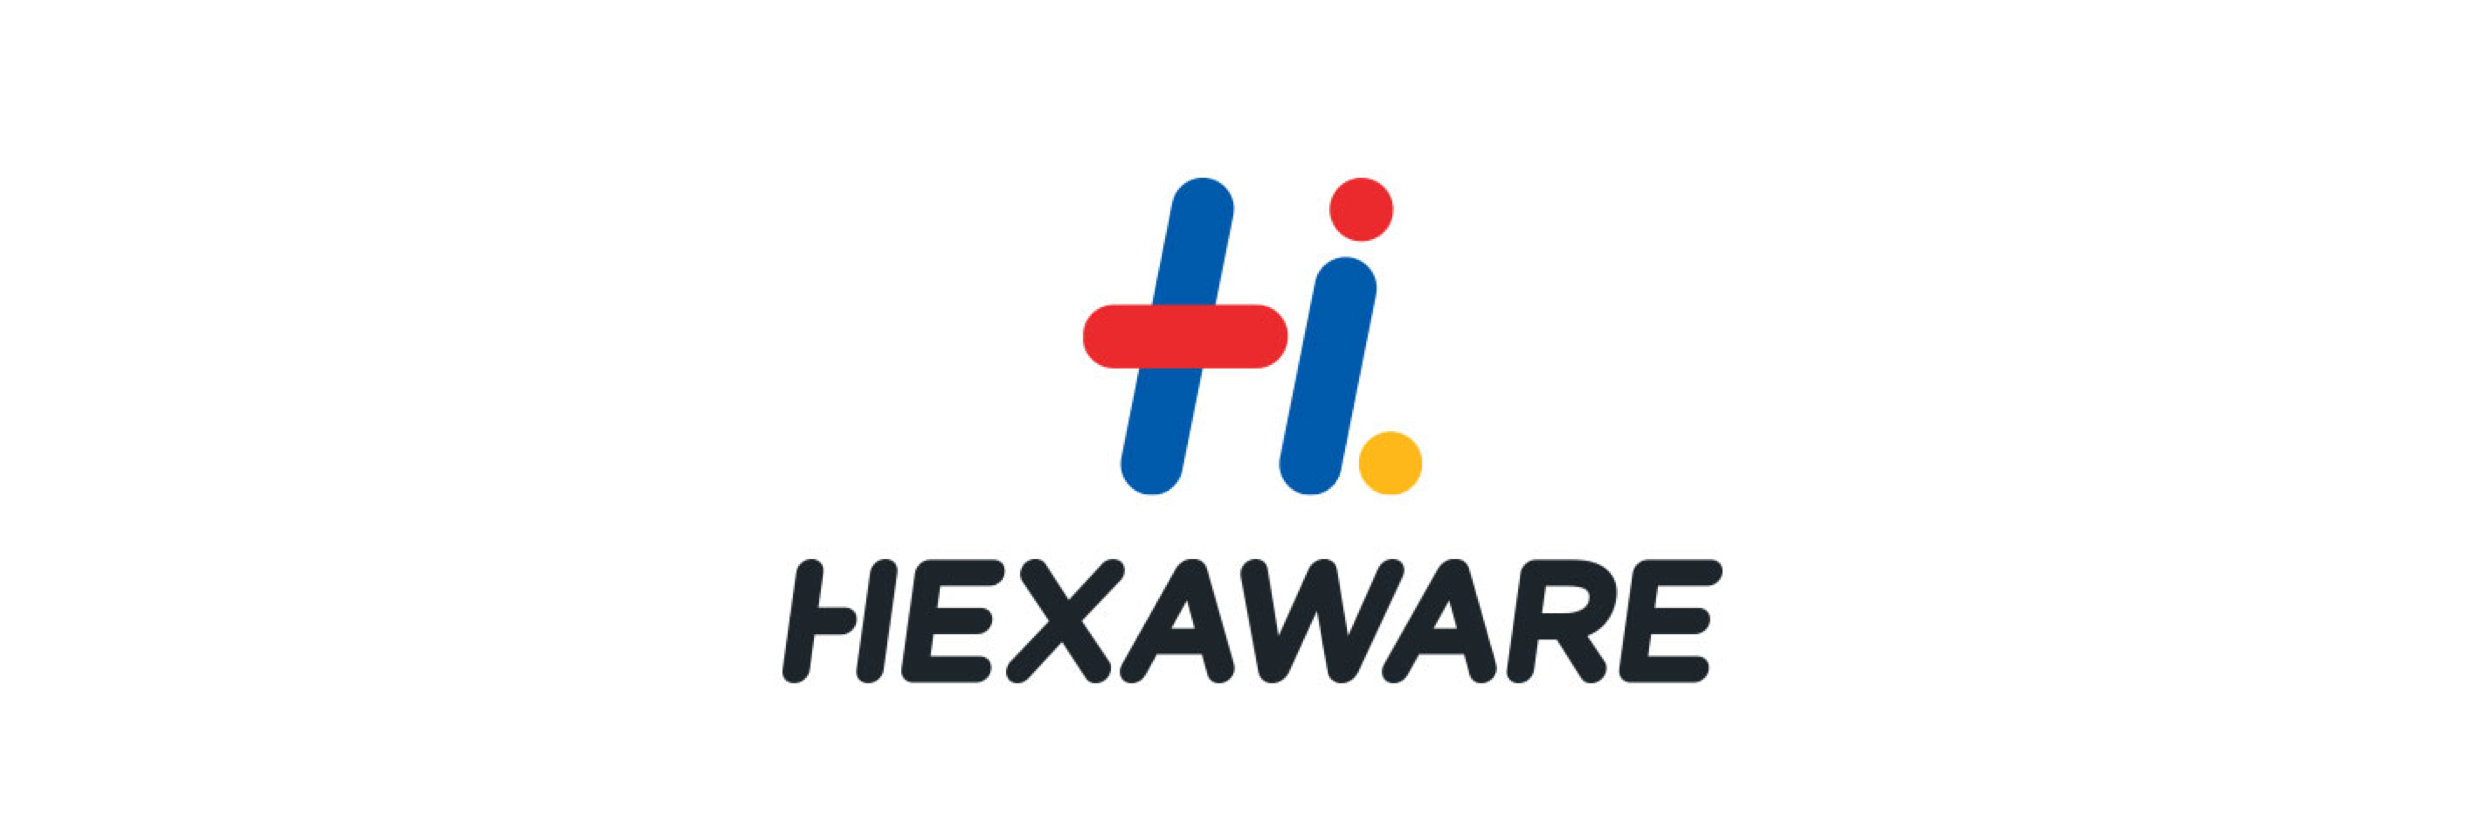 Hexaware 2